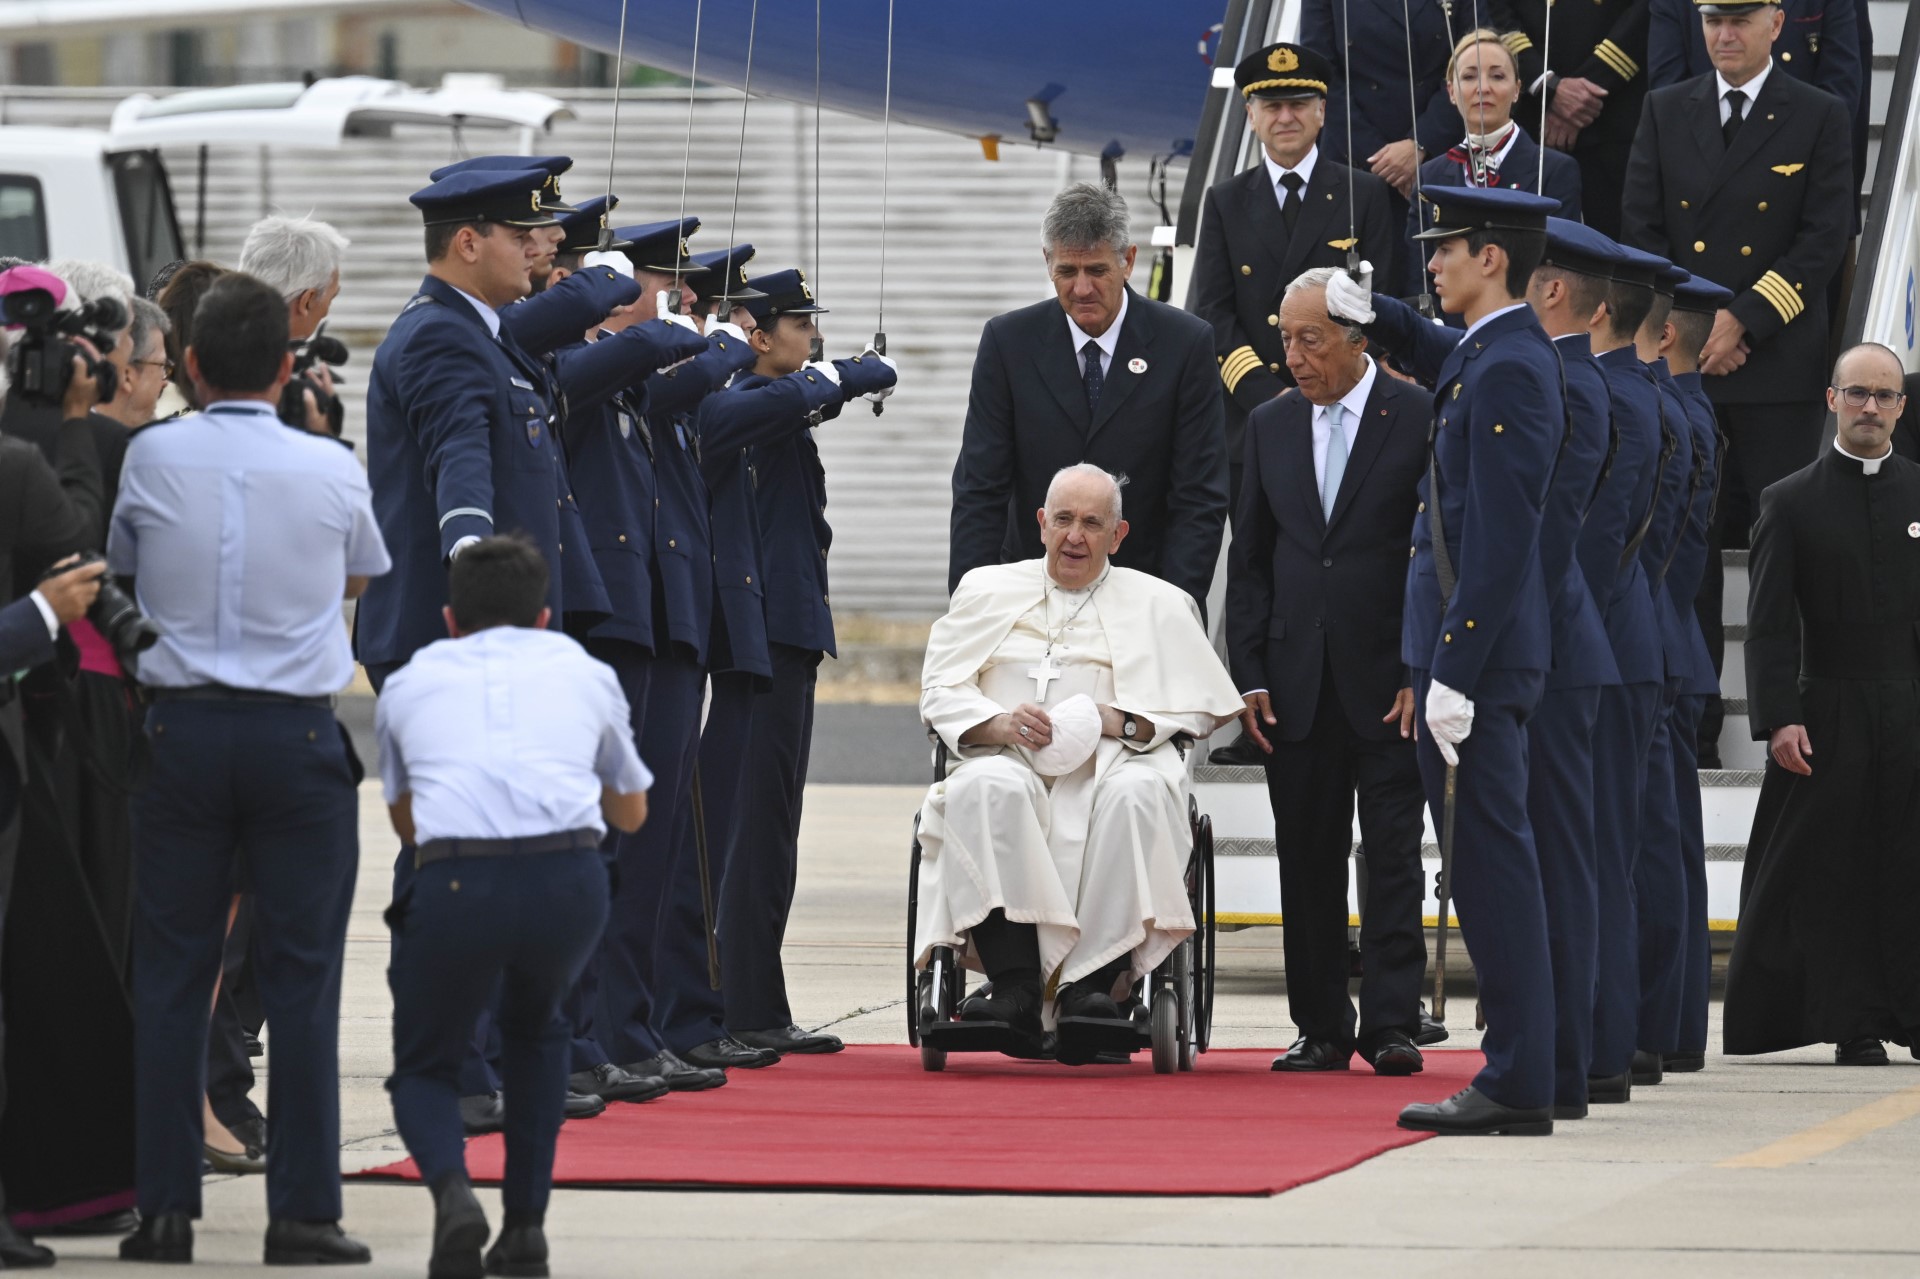 Papa de 86 anos: Voltarei deste evento rejuvenescido